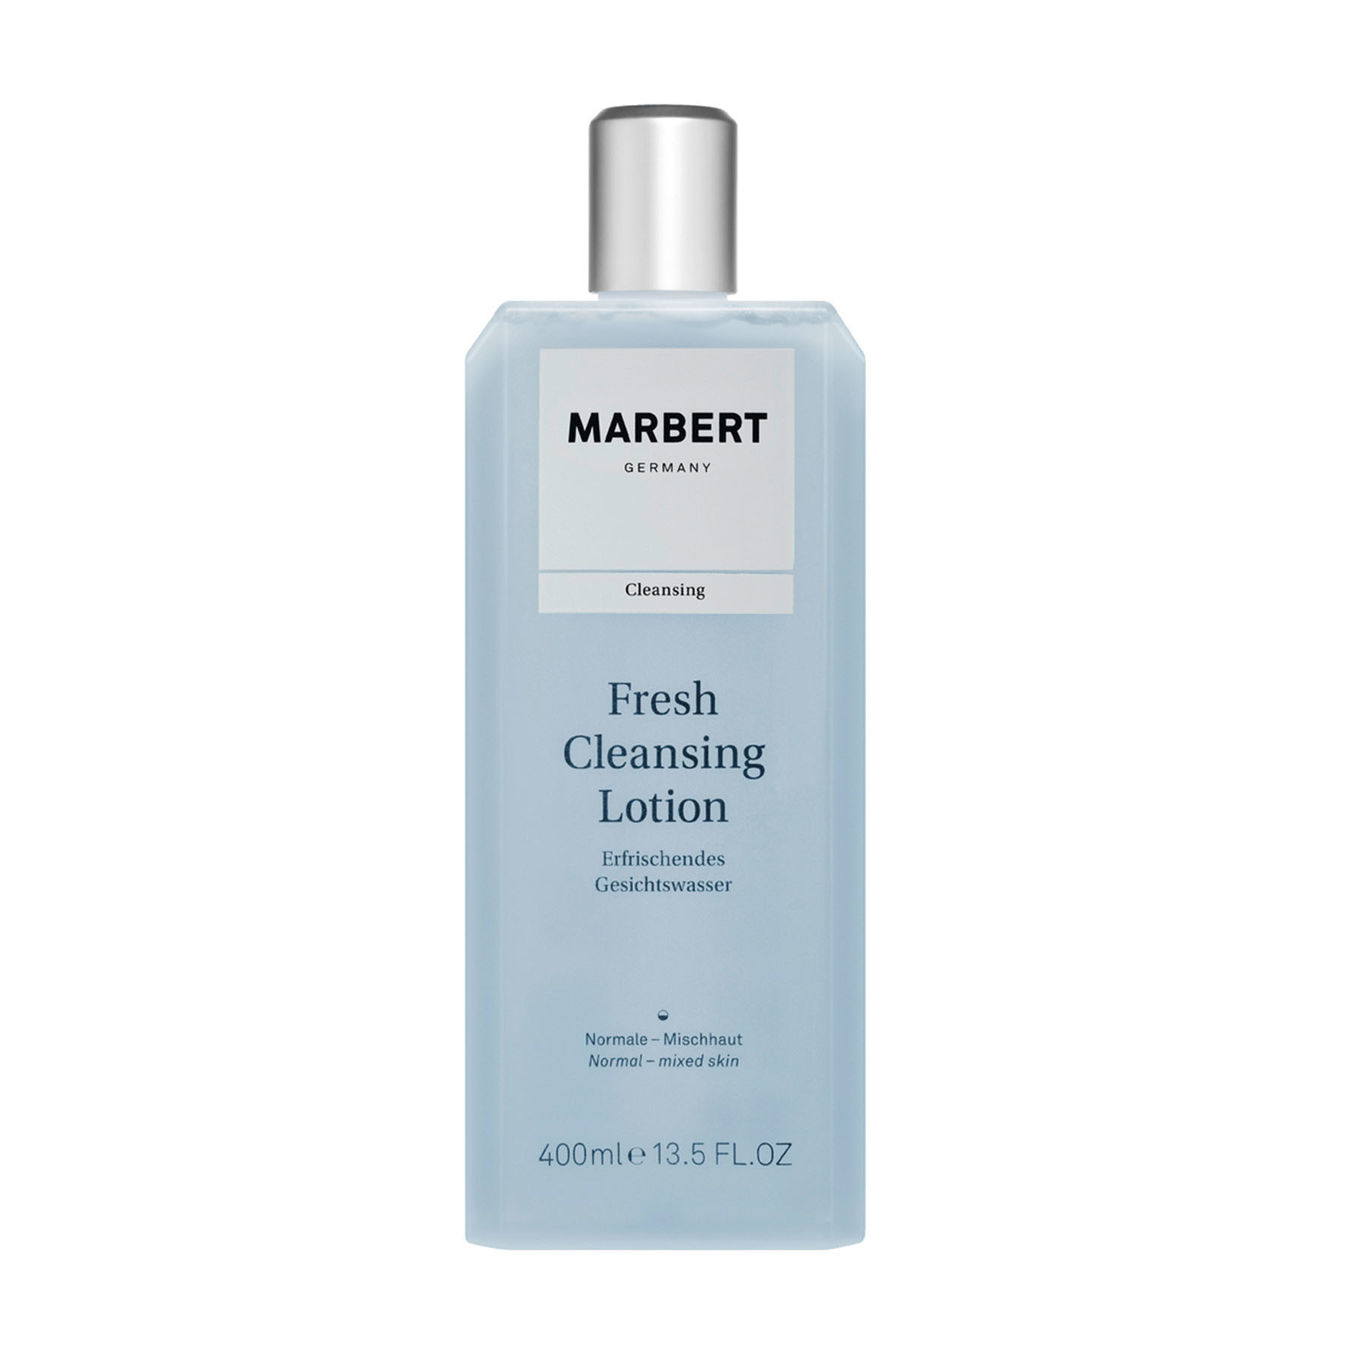 Marbert Fresh Cleansing Lotion erfrischendes Gesichtswasser 400ml Damen von Marbert